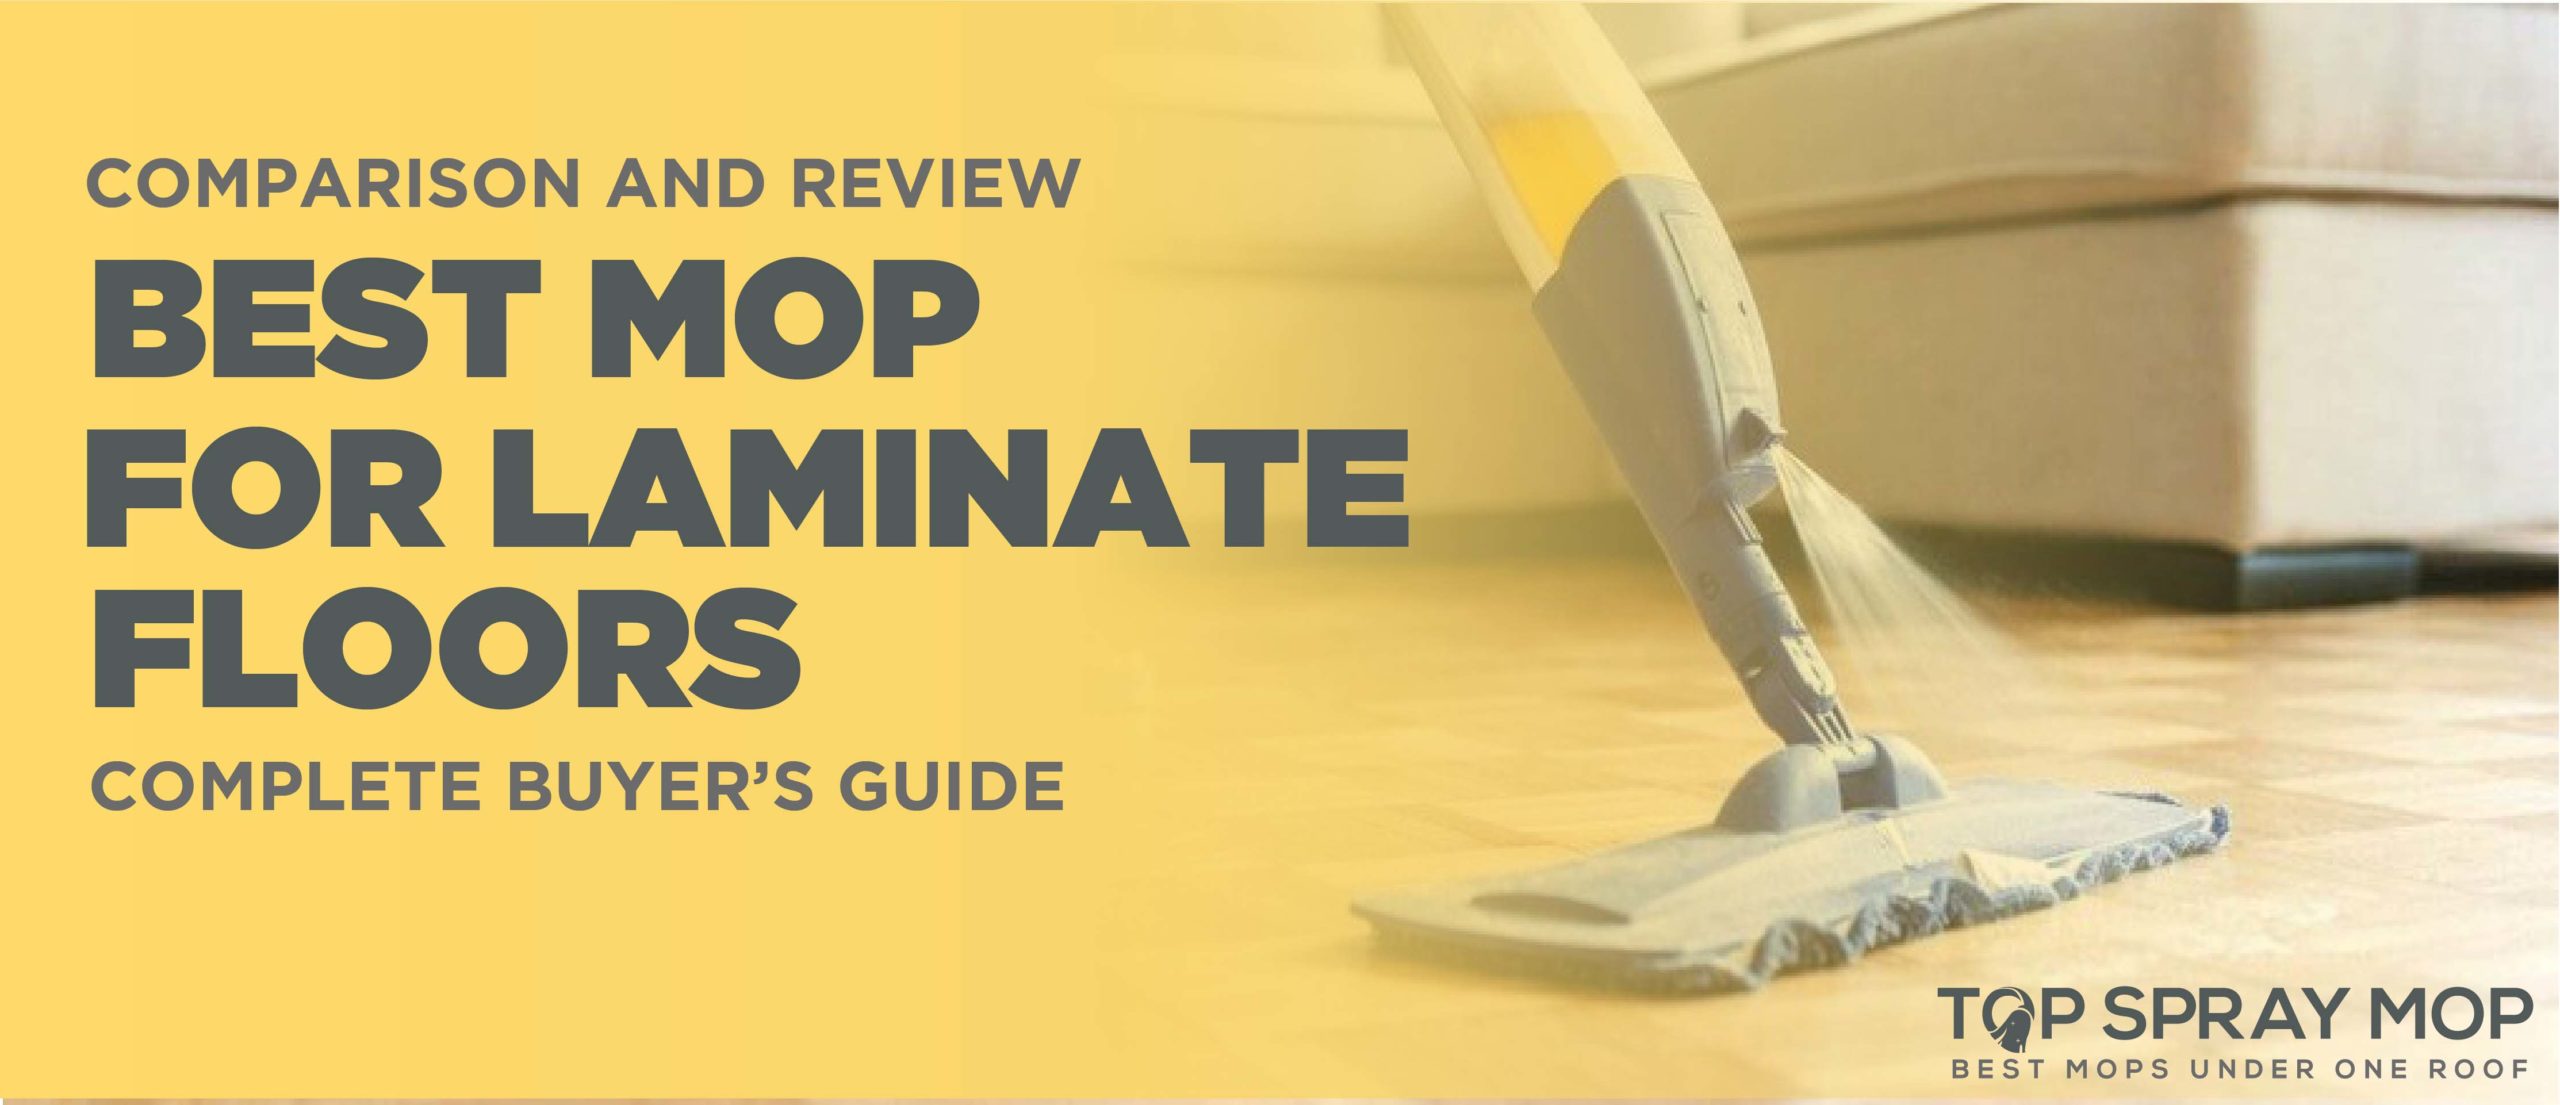 10 Best Mop For Laminate Floors 2021, Dust Mop Spray For Laminate Floors